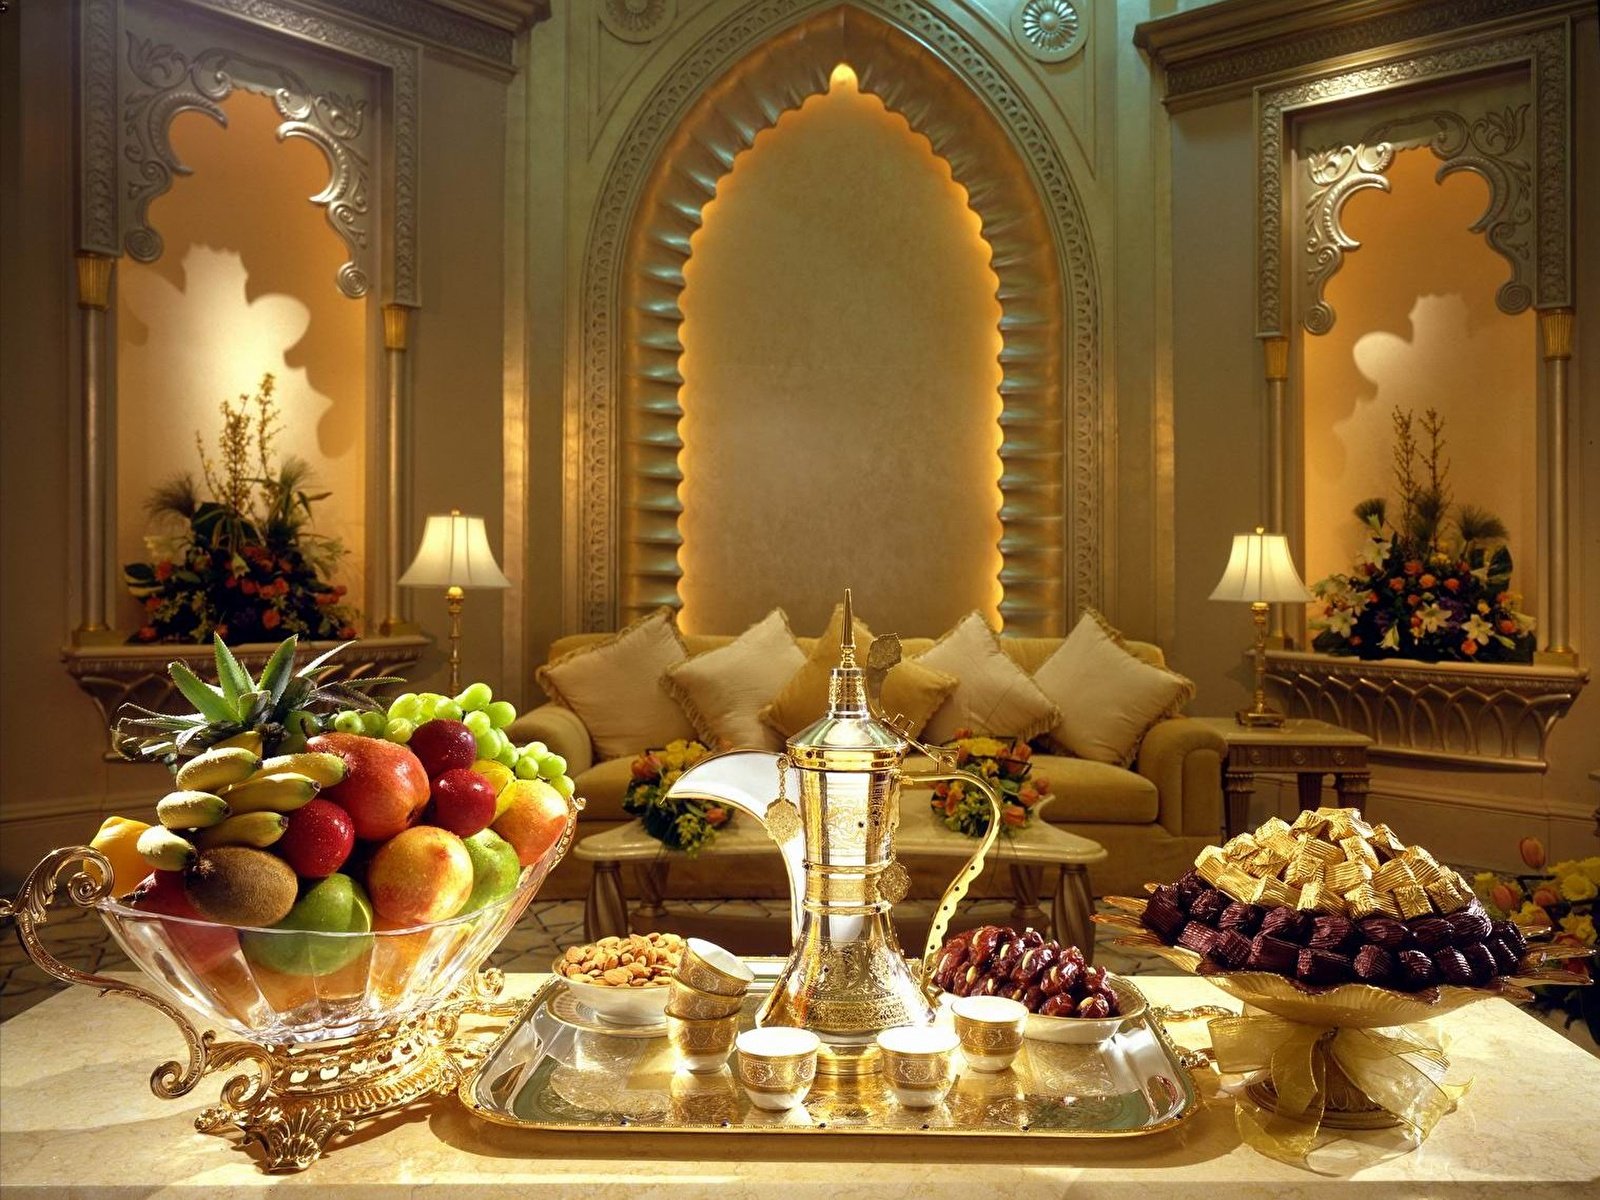 Вечер в арабском стиле. Шикарный стол с едой. Добрый вечер в Восточном стиле. Новый год в арабском стиле. Восточное время вечер